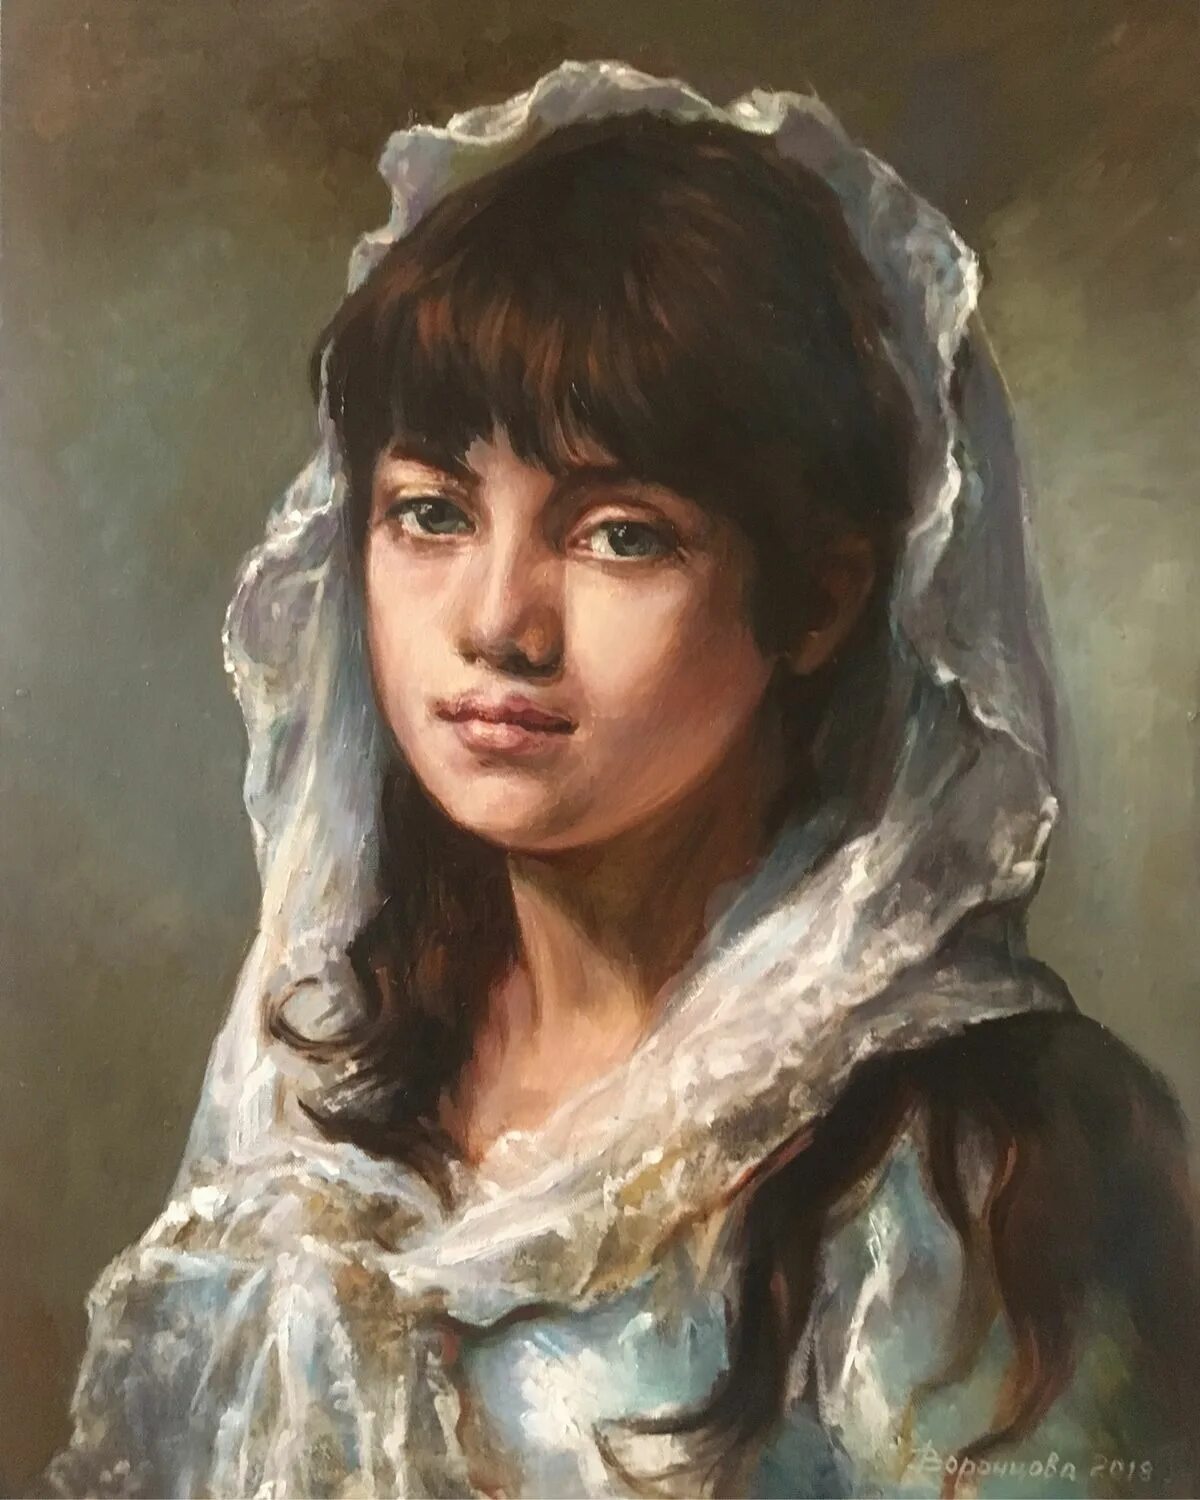 Veil painting. Вуаль в живописи. Картина молодая девушка. Копия портрета. Портрет молодой девушки вуаль.